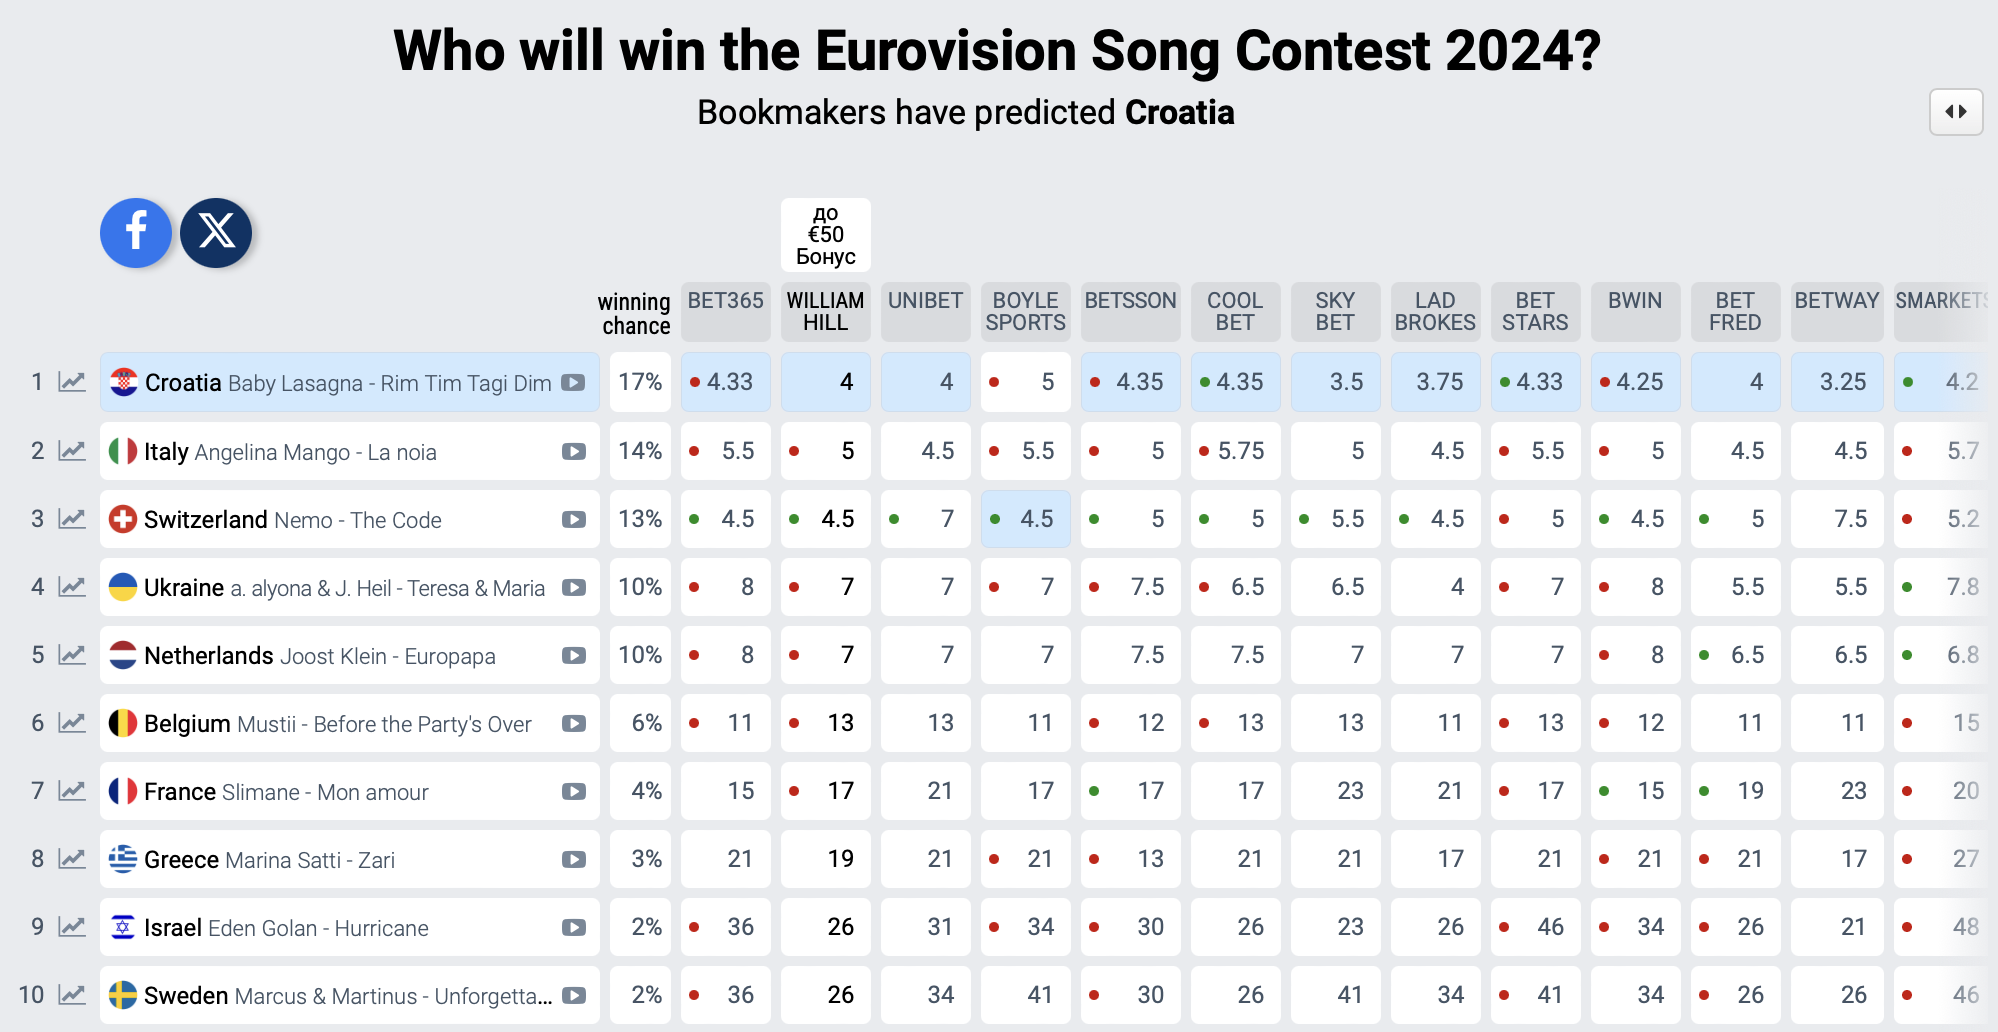 Po raz pierwszy Ukraina wypadła z pierwszej trójki w rankingu bukmacherów Konkursu Piosenki Eurowizji 2024: kto zastąpił alyonę alyonę i Jerry Heil